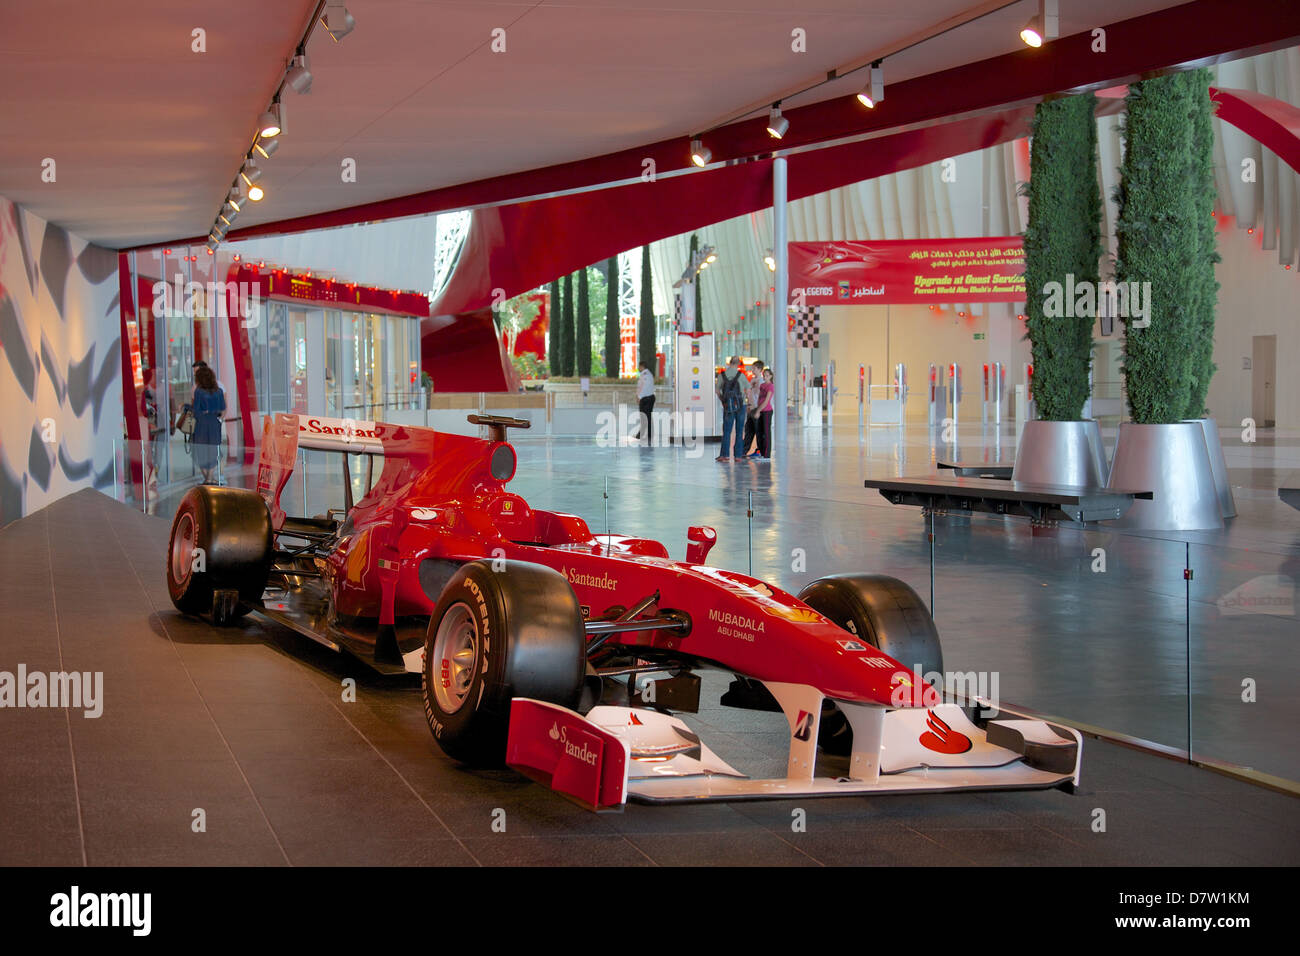 Formel 1 Rennwagen, Ferrari World, Yas Island, Abu Dhabi, Vereinigte Arabische Emirate, Naher Osten Stockfoto